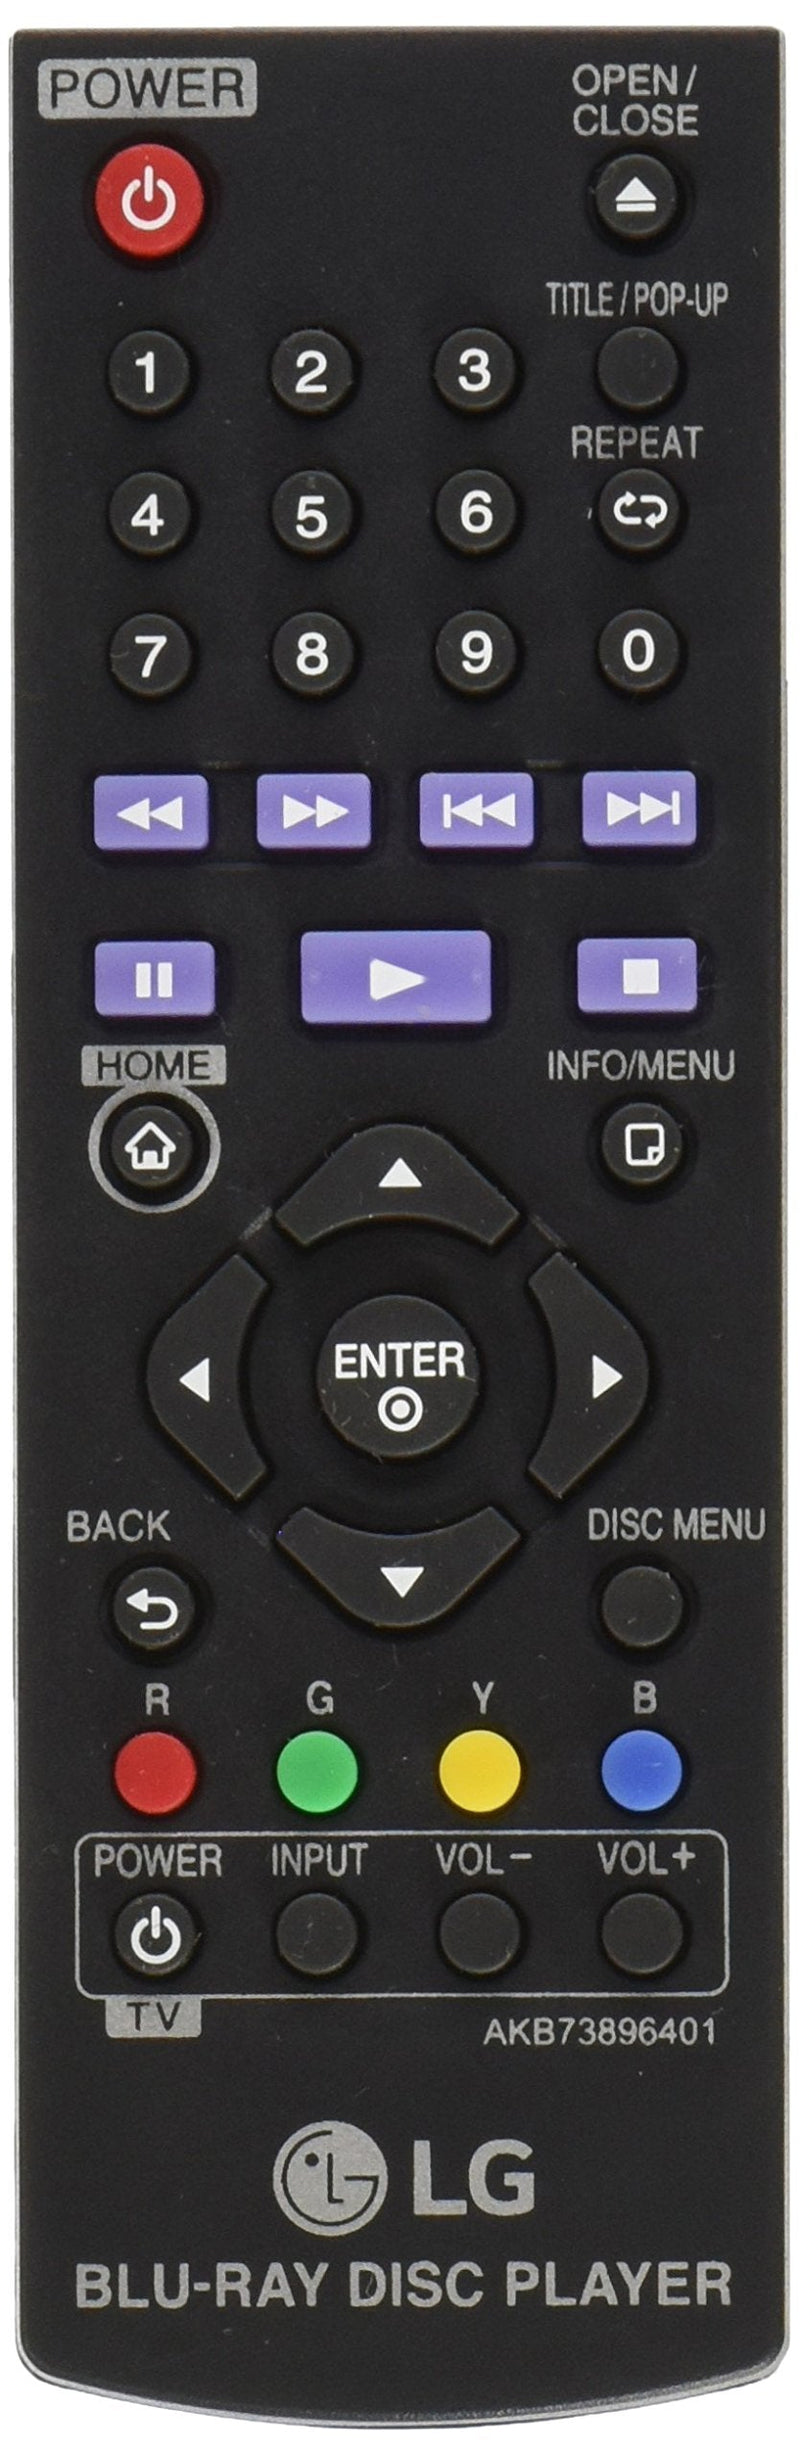  [AUSTRALIA] - LG AKB73896401 Remote Control For BP200 AKB73896401 BD640 BP325W BP135W BP350 DVD Blu-Ray Disc Player